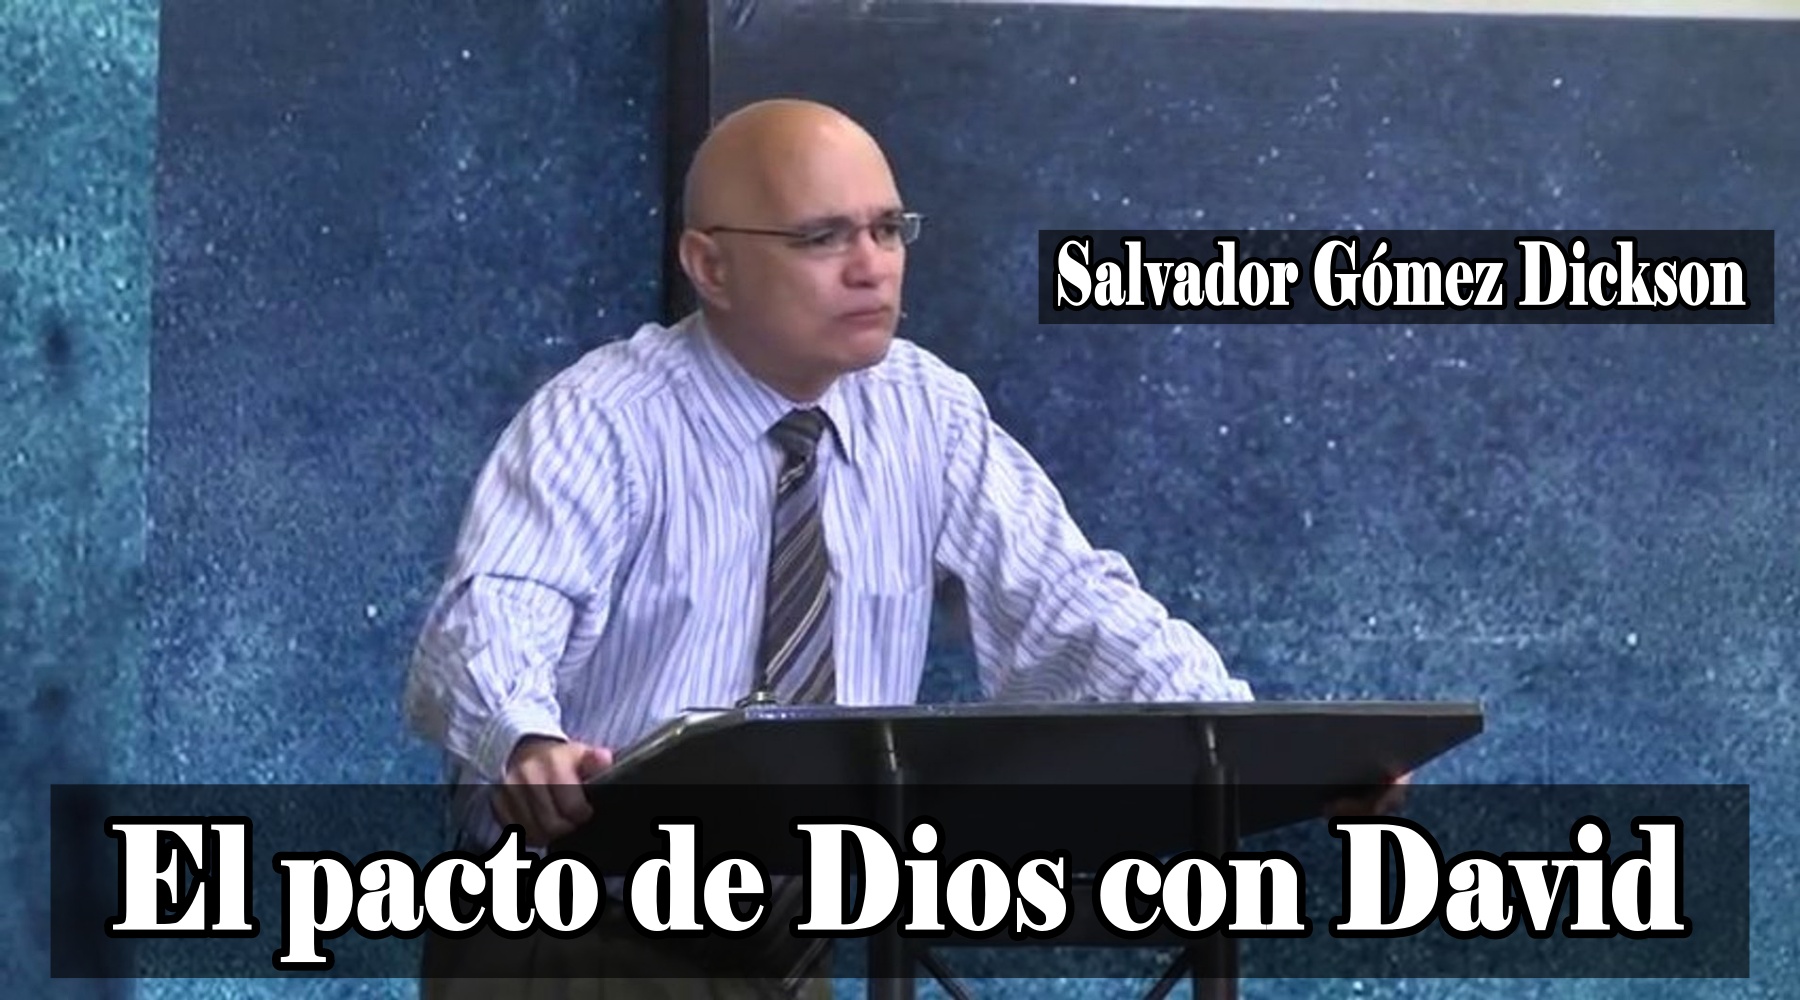 Pastor Salvador Gómez Dickson – El pacto de Dios con David, Predicaciones, estudios bíblicos